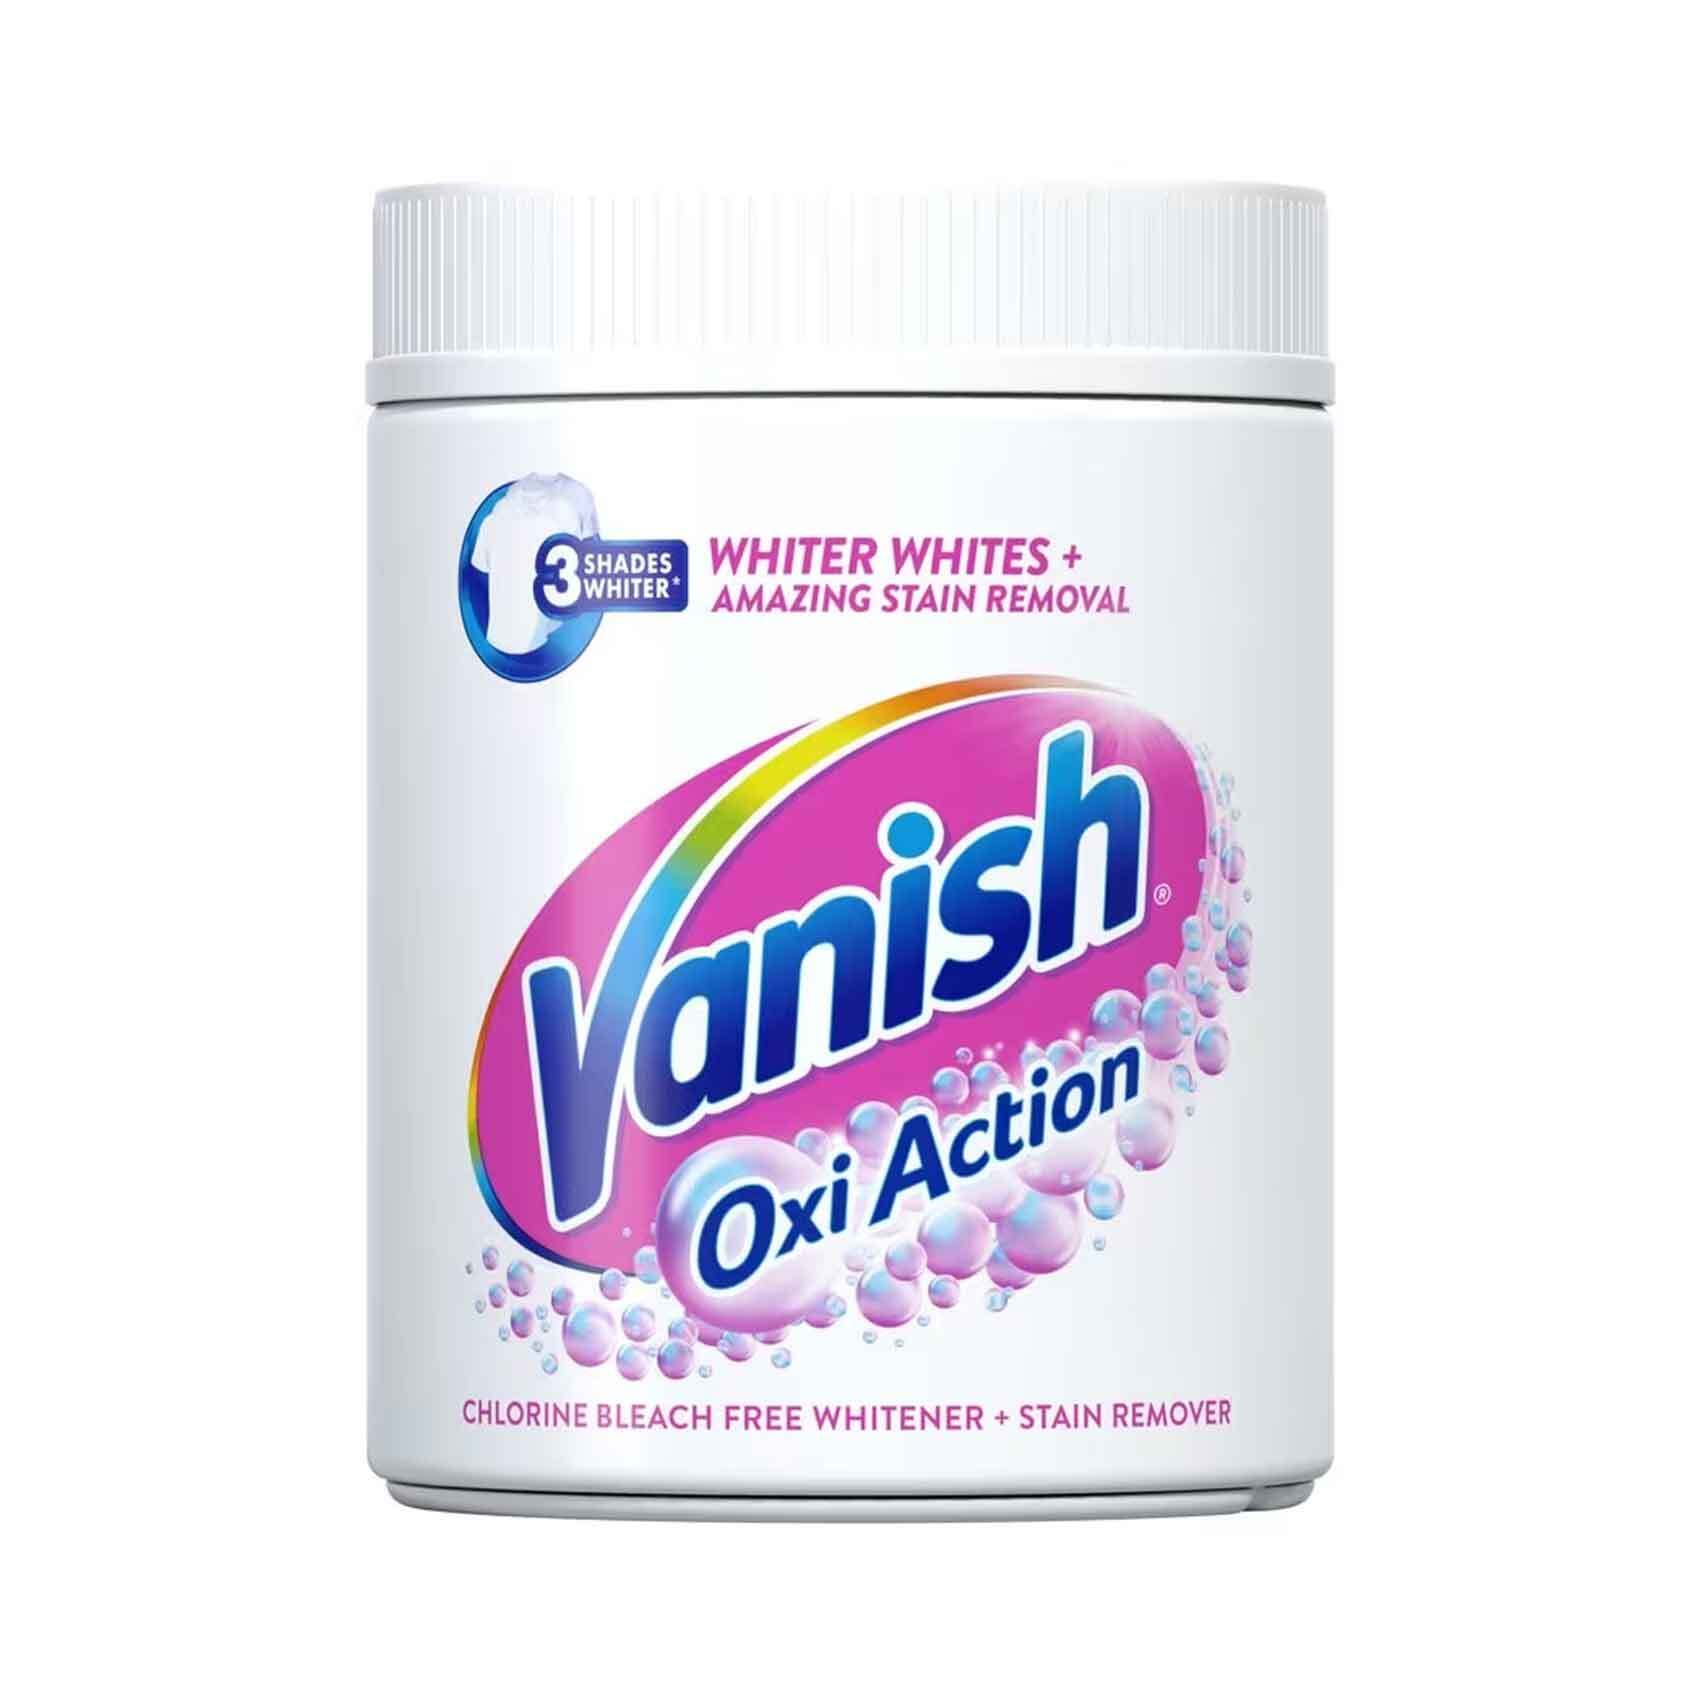 Spray détachant Vanish Oxi Action - 4 x 500 ml